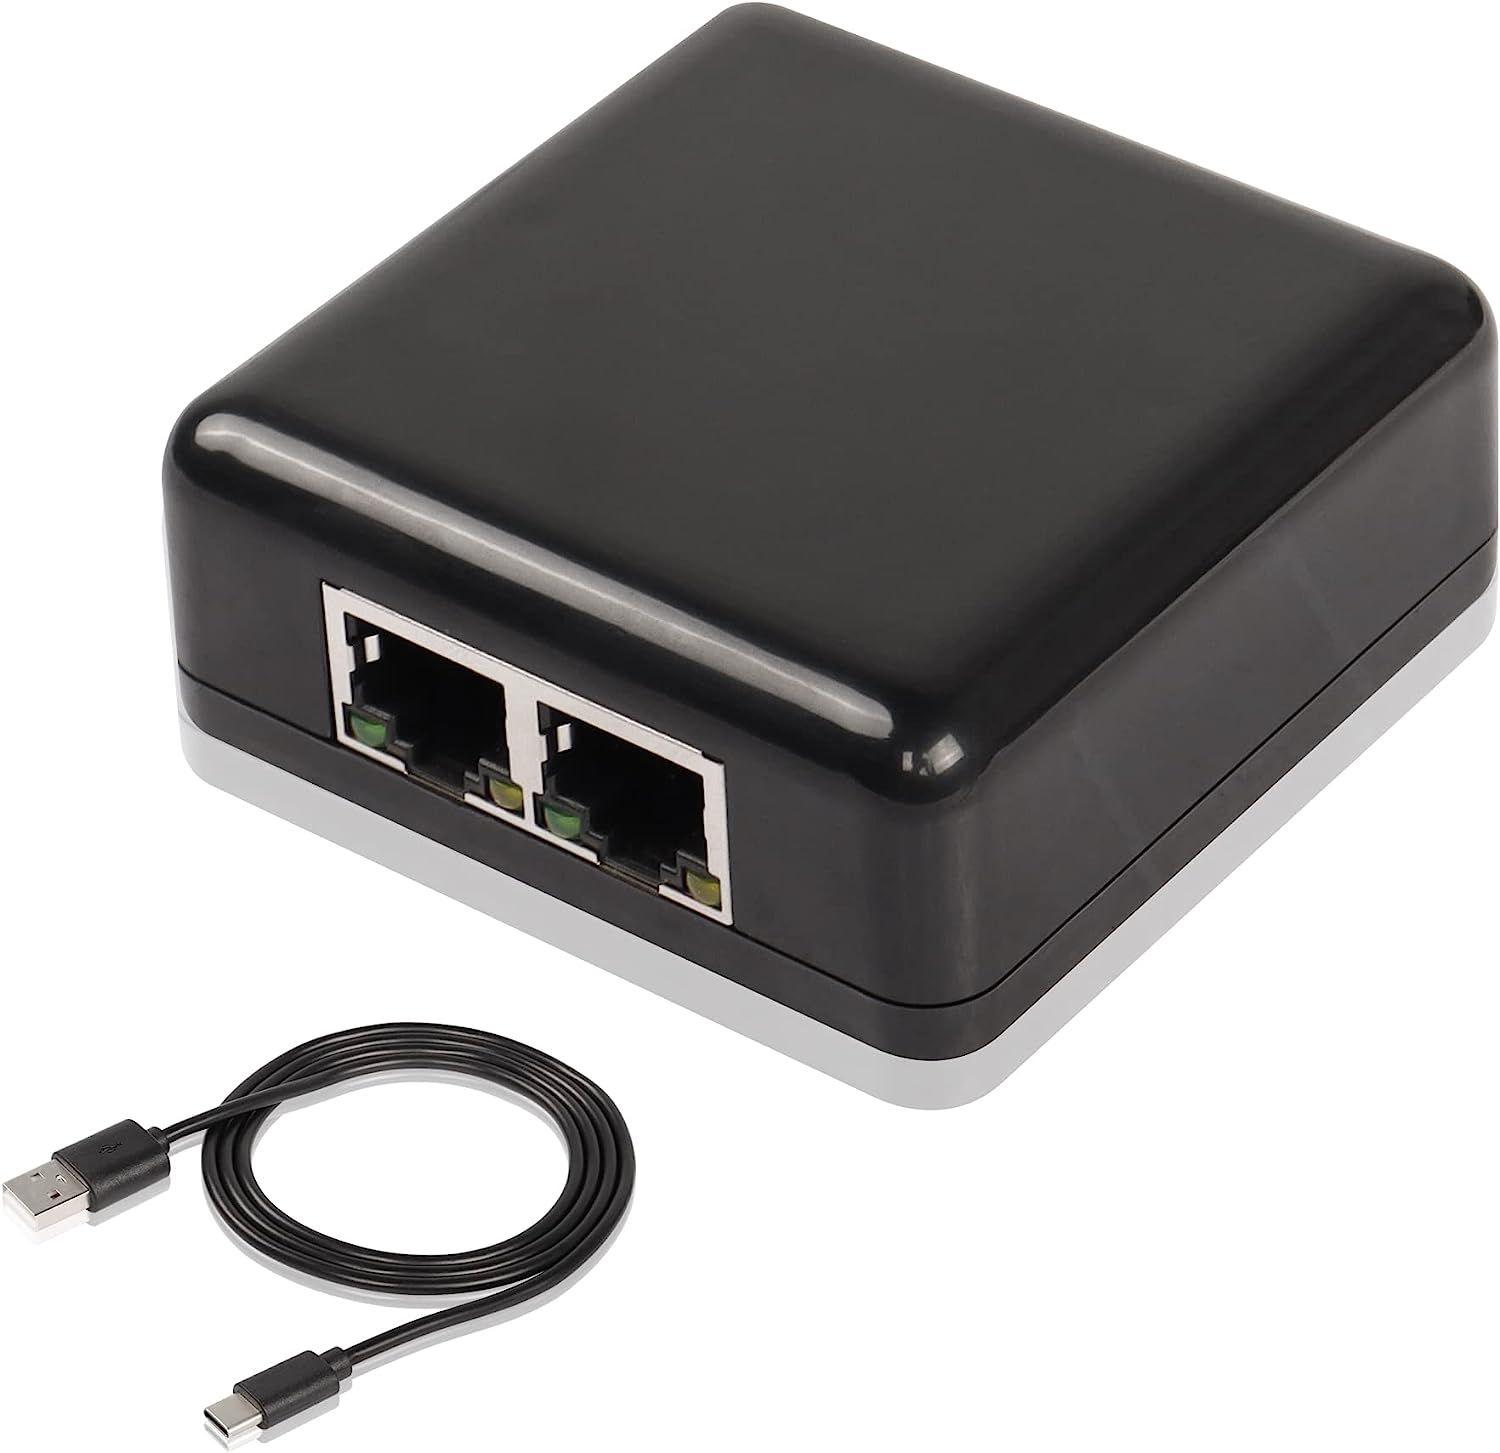 RJ45 1 to 2 Gigabit Network Splitter,1000/100Mbps Ethernet Adapter